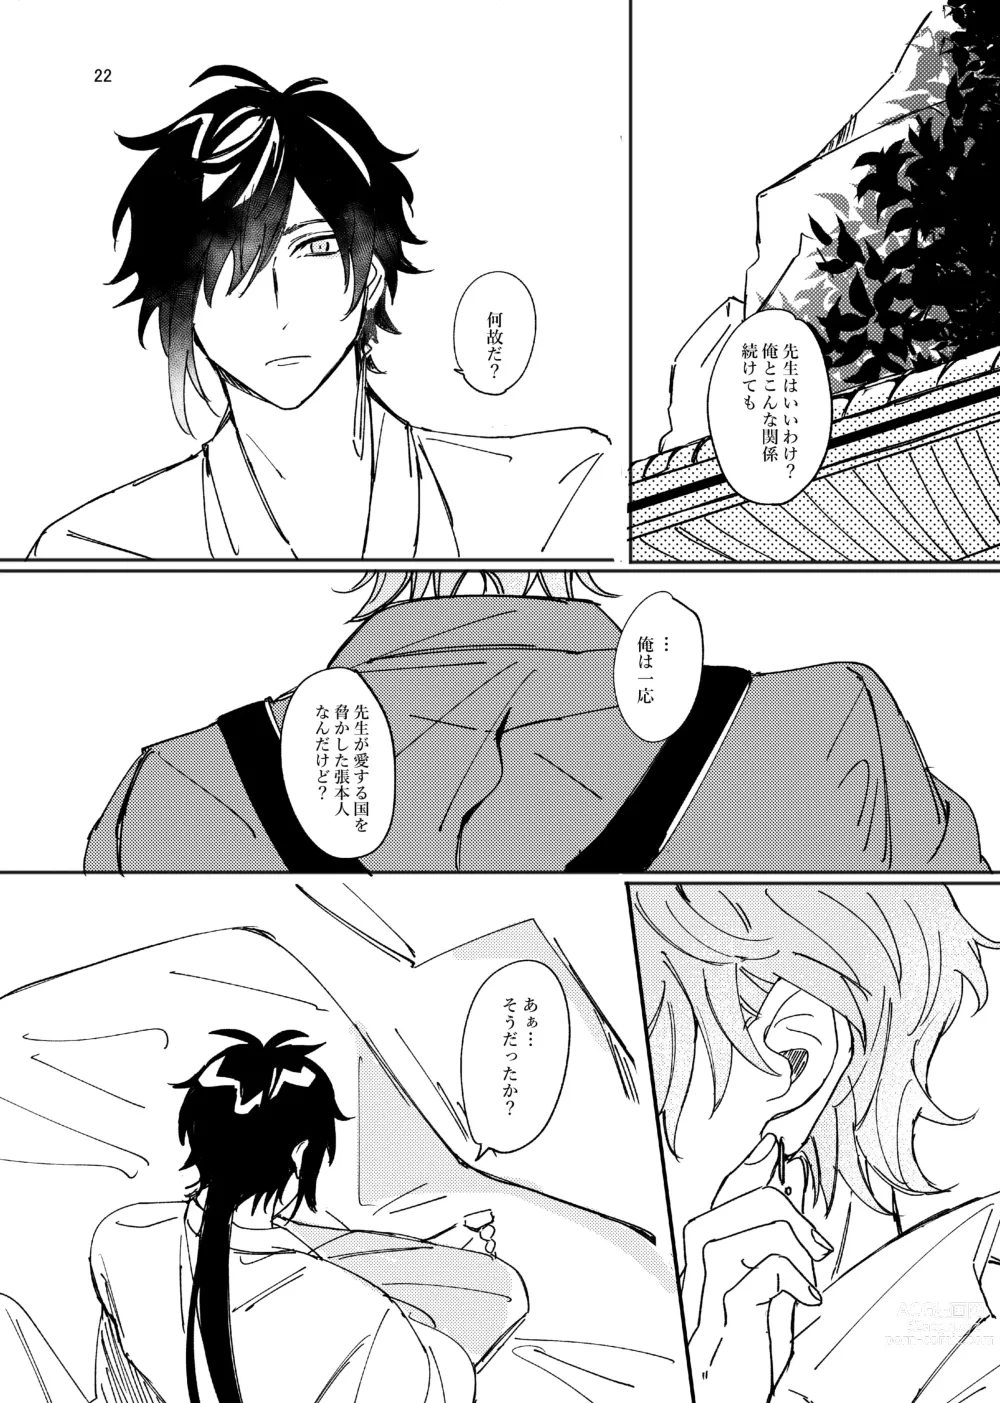 Page 22 of doujinshi Aizu